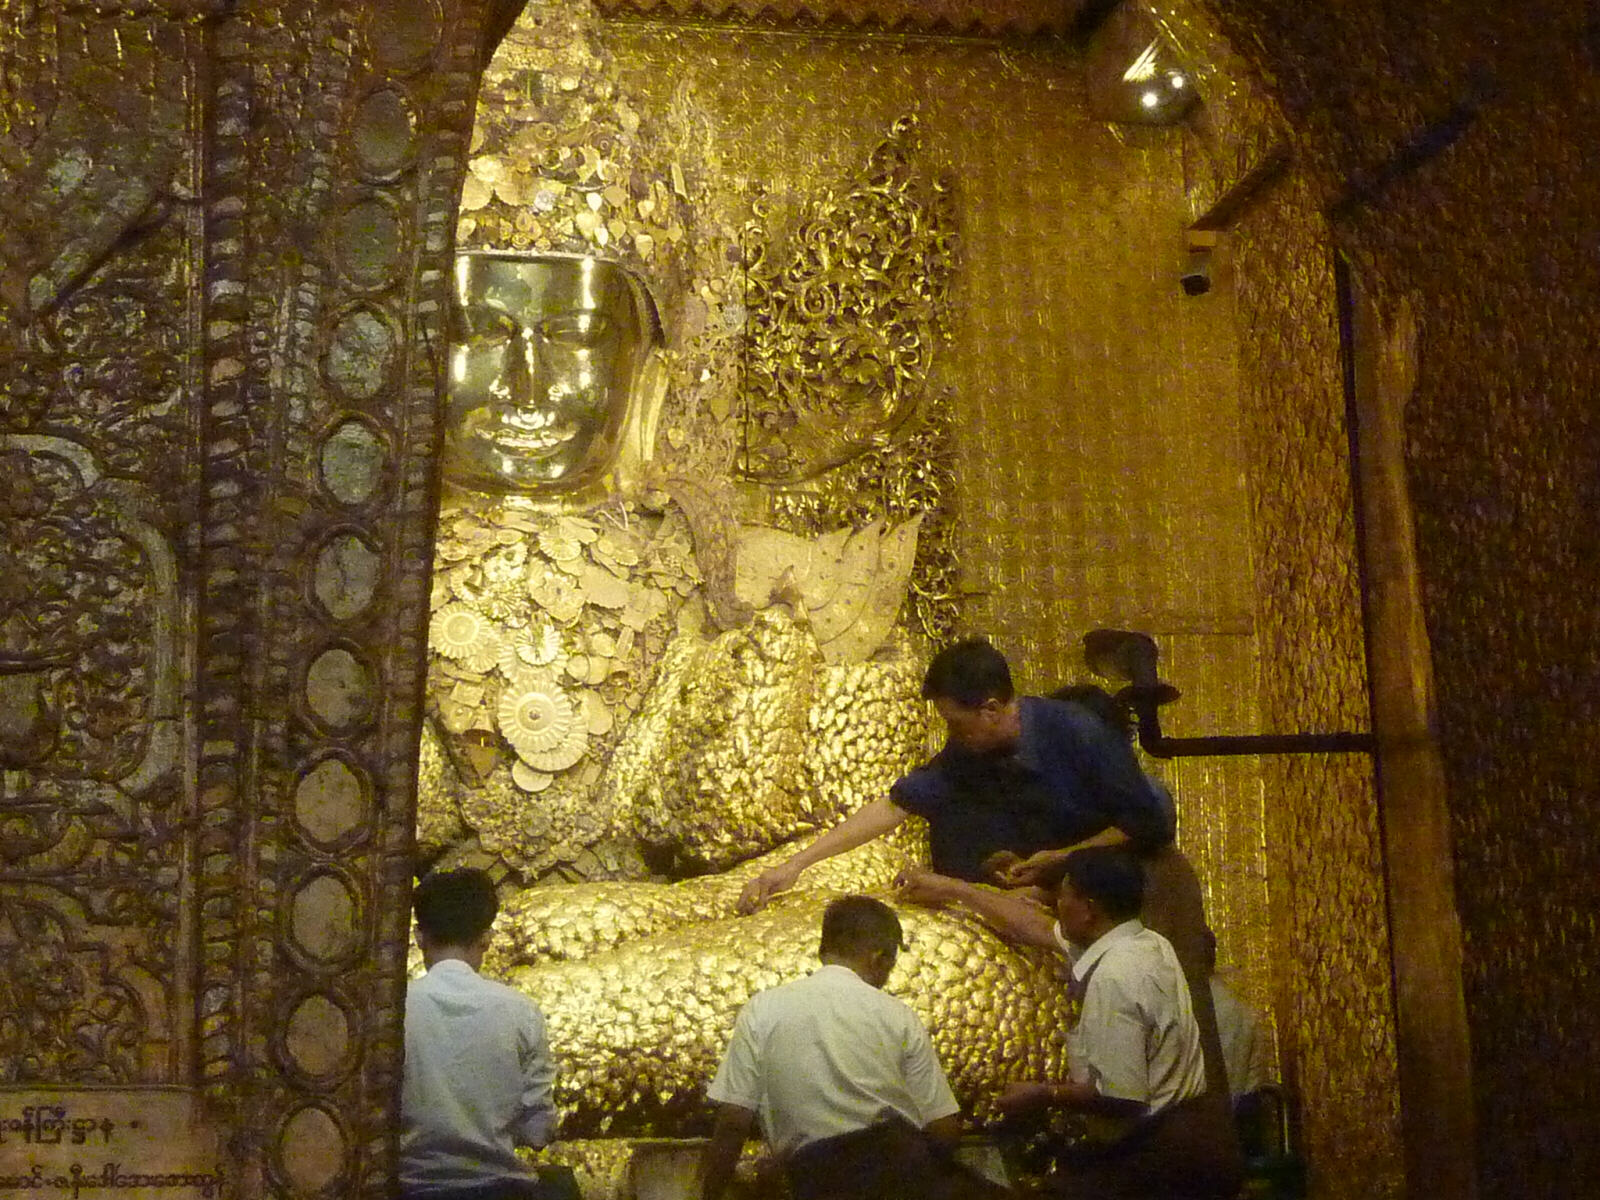 The ancient golden Buddha at Mahamuni Pagoda in Mandalay